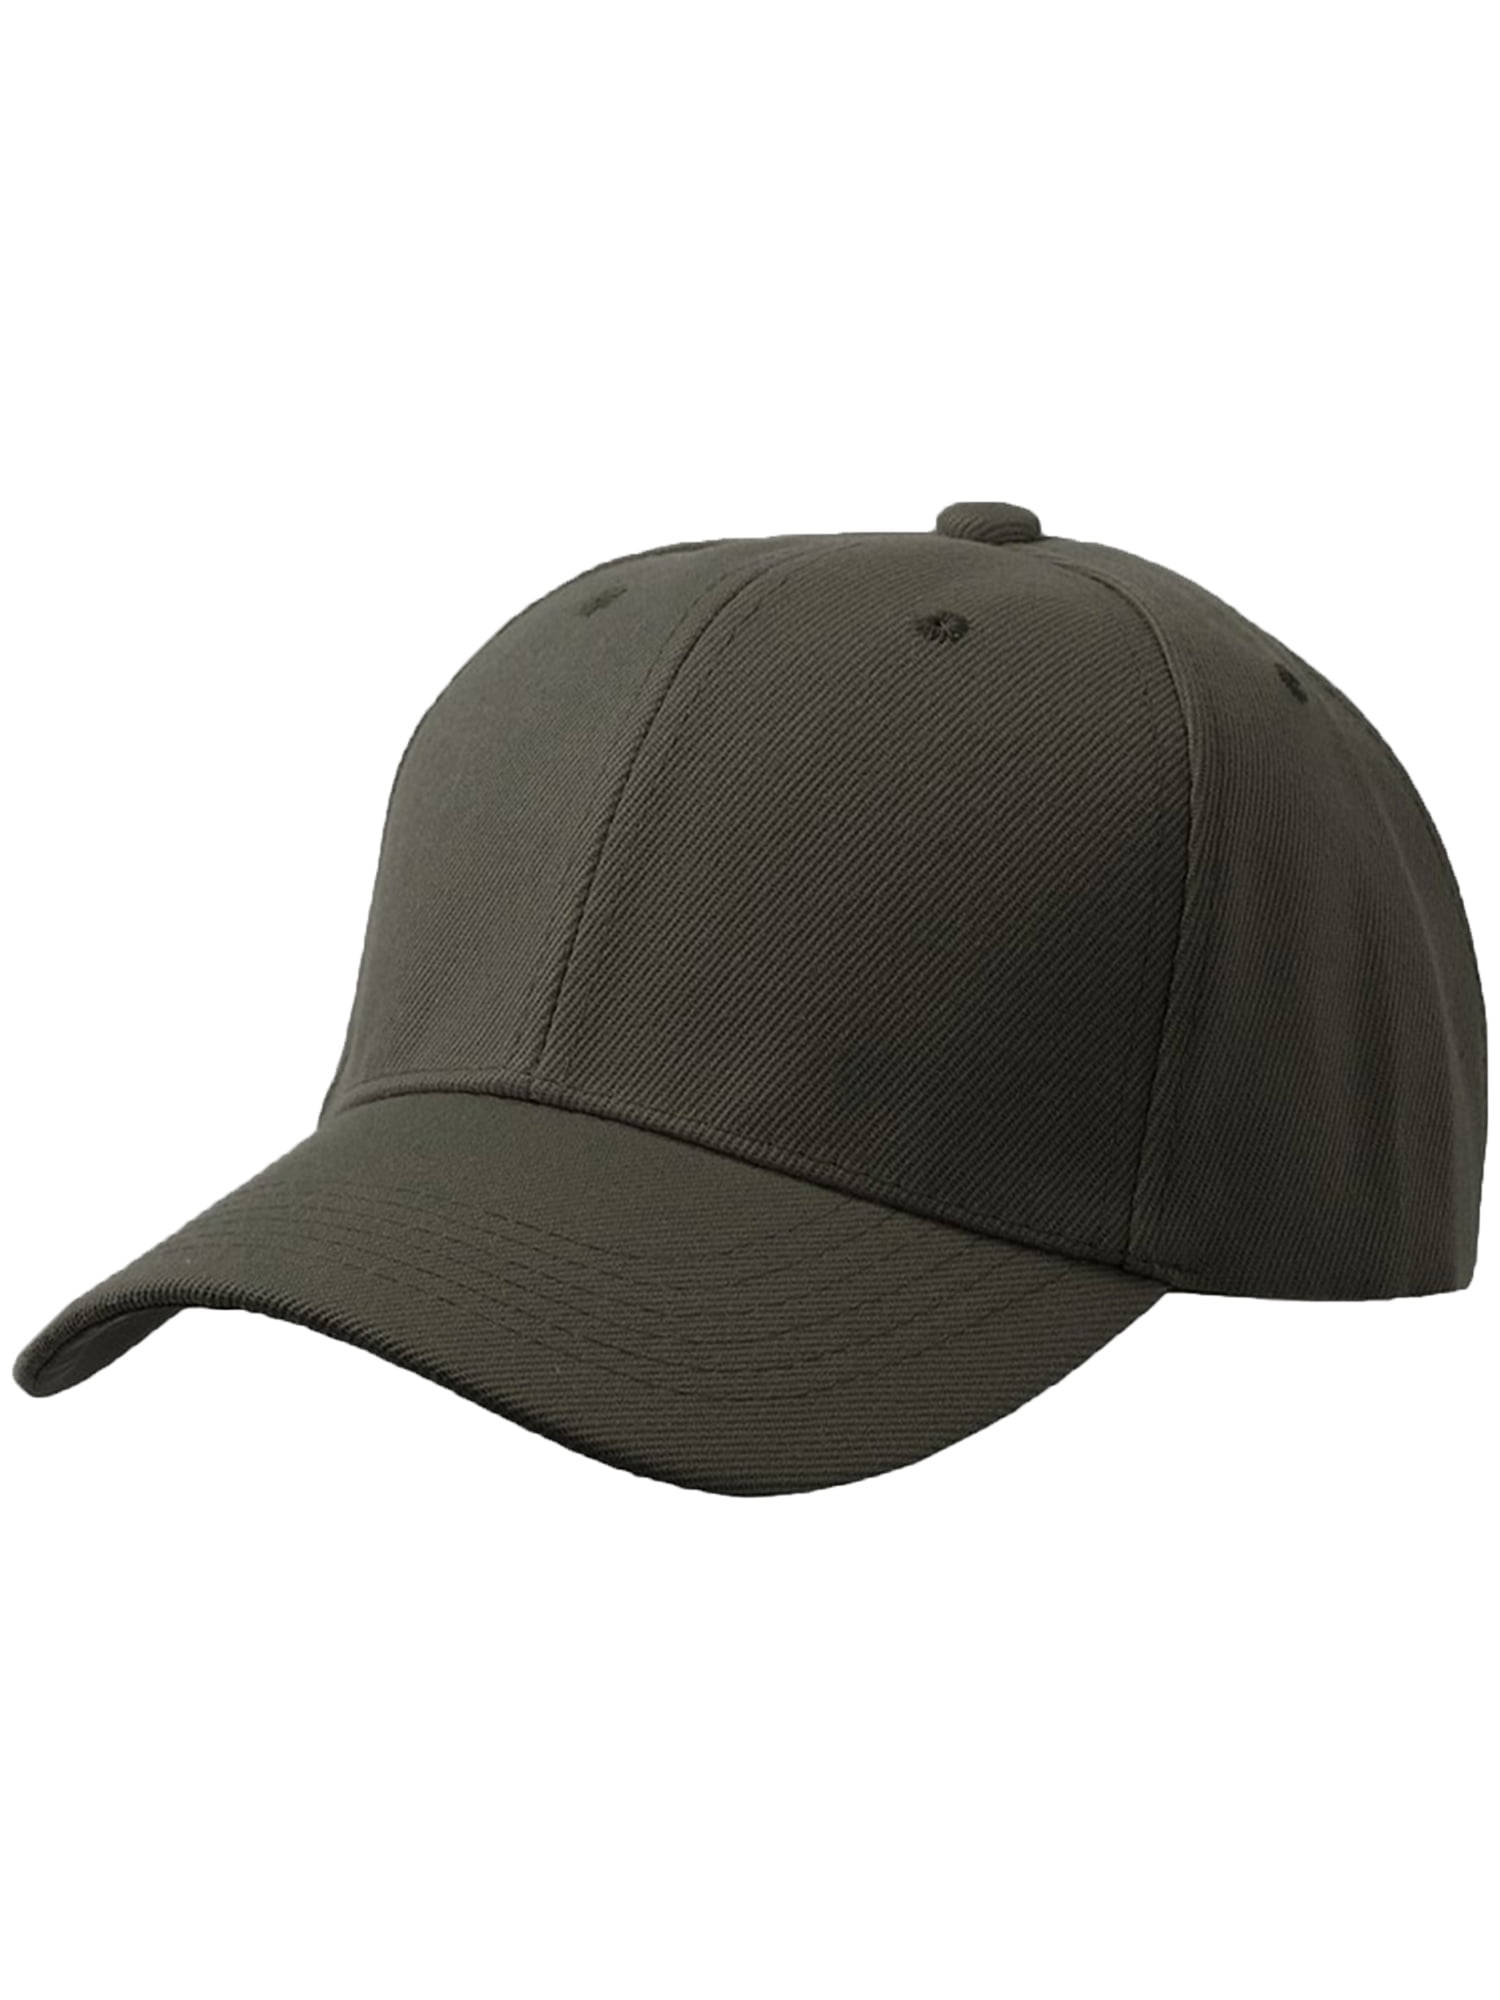 Olive Plain Baseball Hat-3P Visor Black Men\'s Charcoal Cap Adjustable Curved